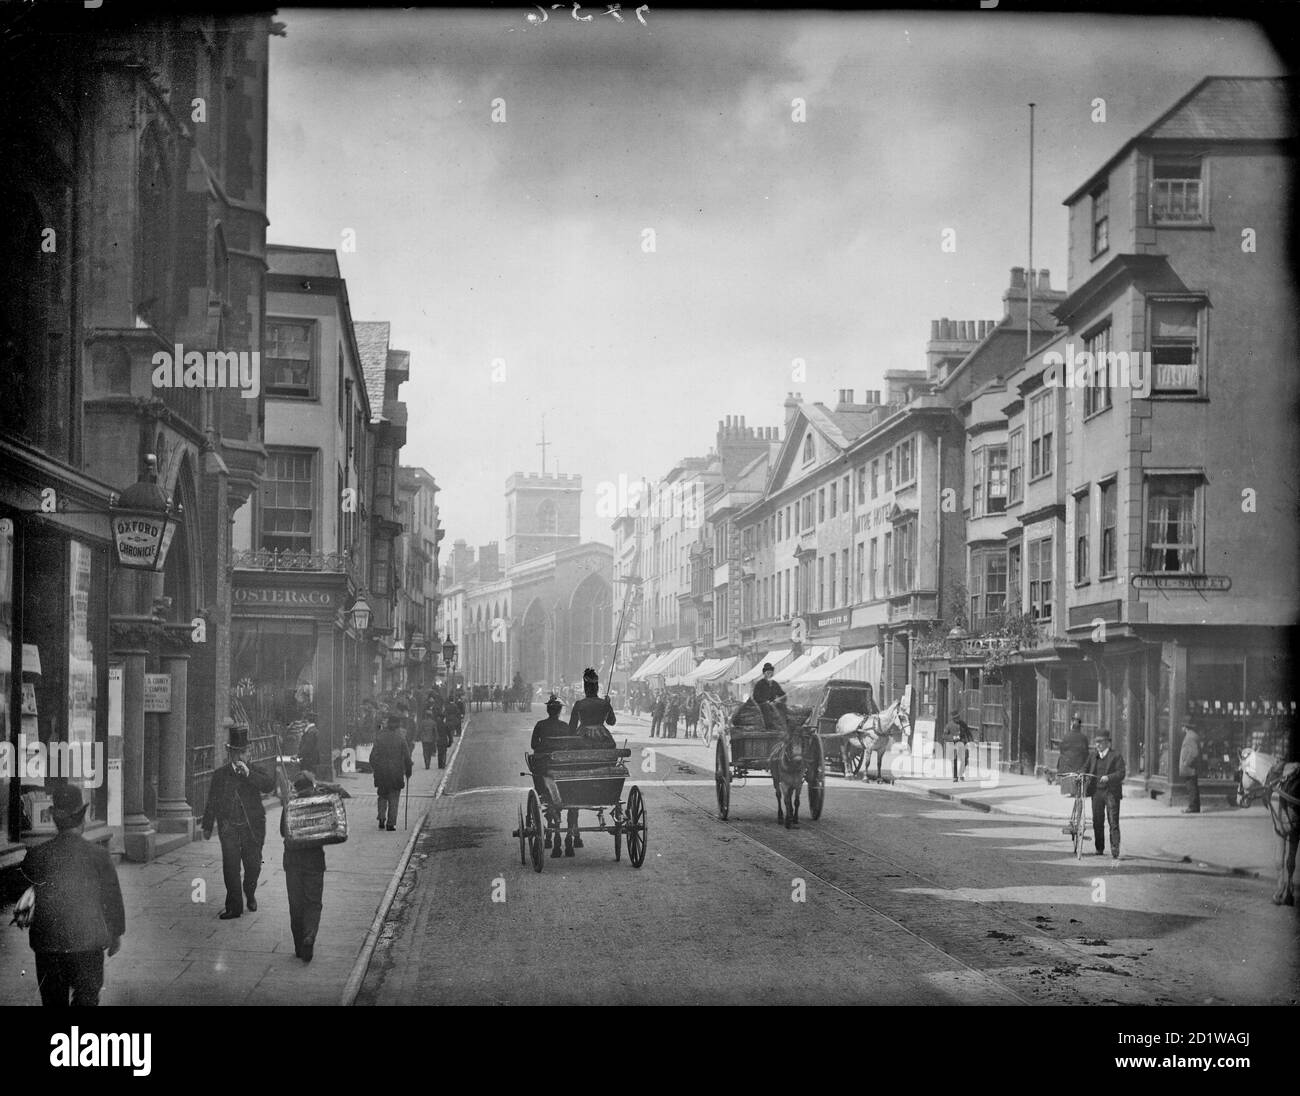 High Street, Oxford, Oxfordshire. Mirando la calle con la iglesia al final antes de que fue demolida en 1896 para dar paso al plan de mejora de Carfax, ampliando el área para el tráfico. Foto de stock